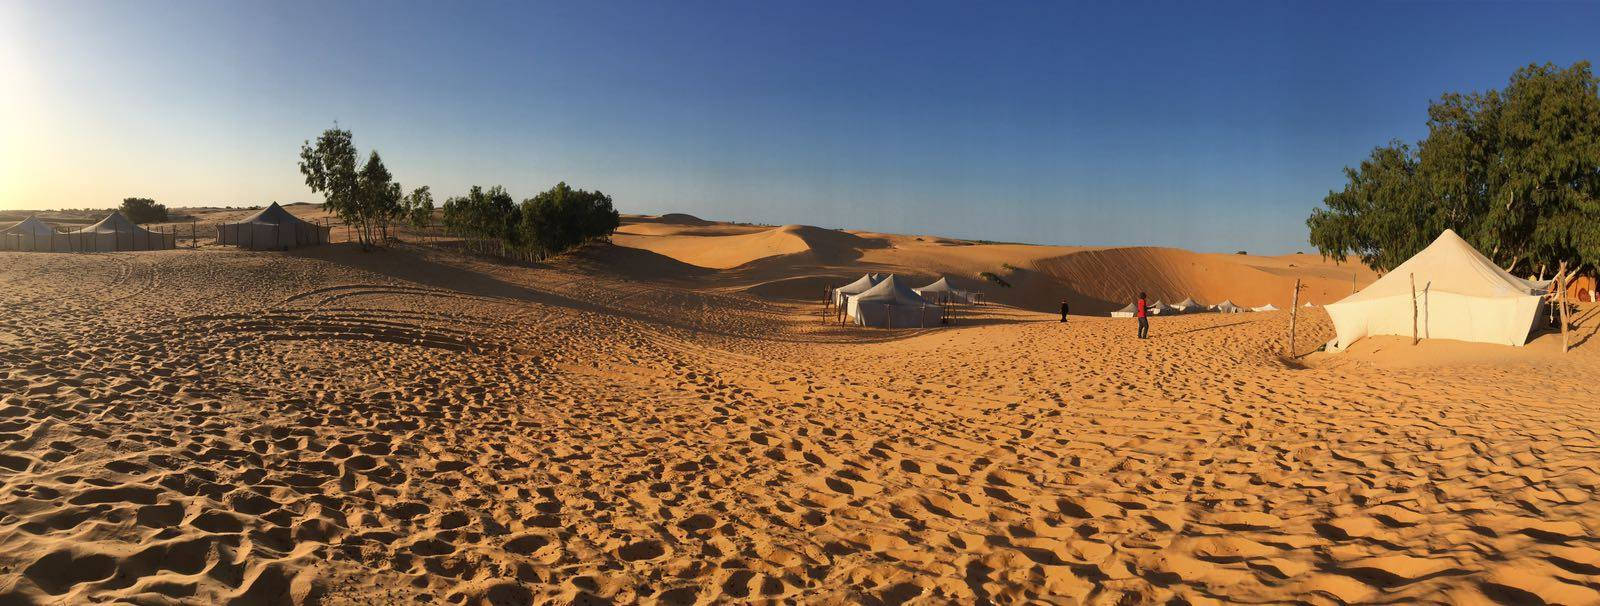 Mauritanien telt i ørkenen Wallpaper